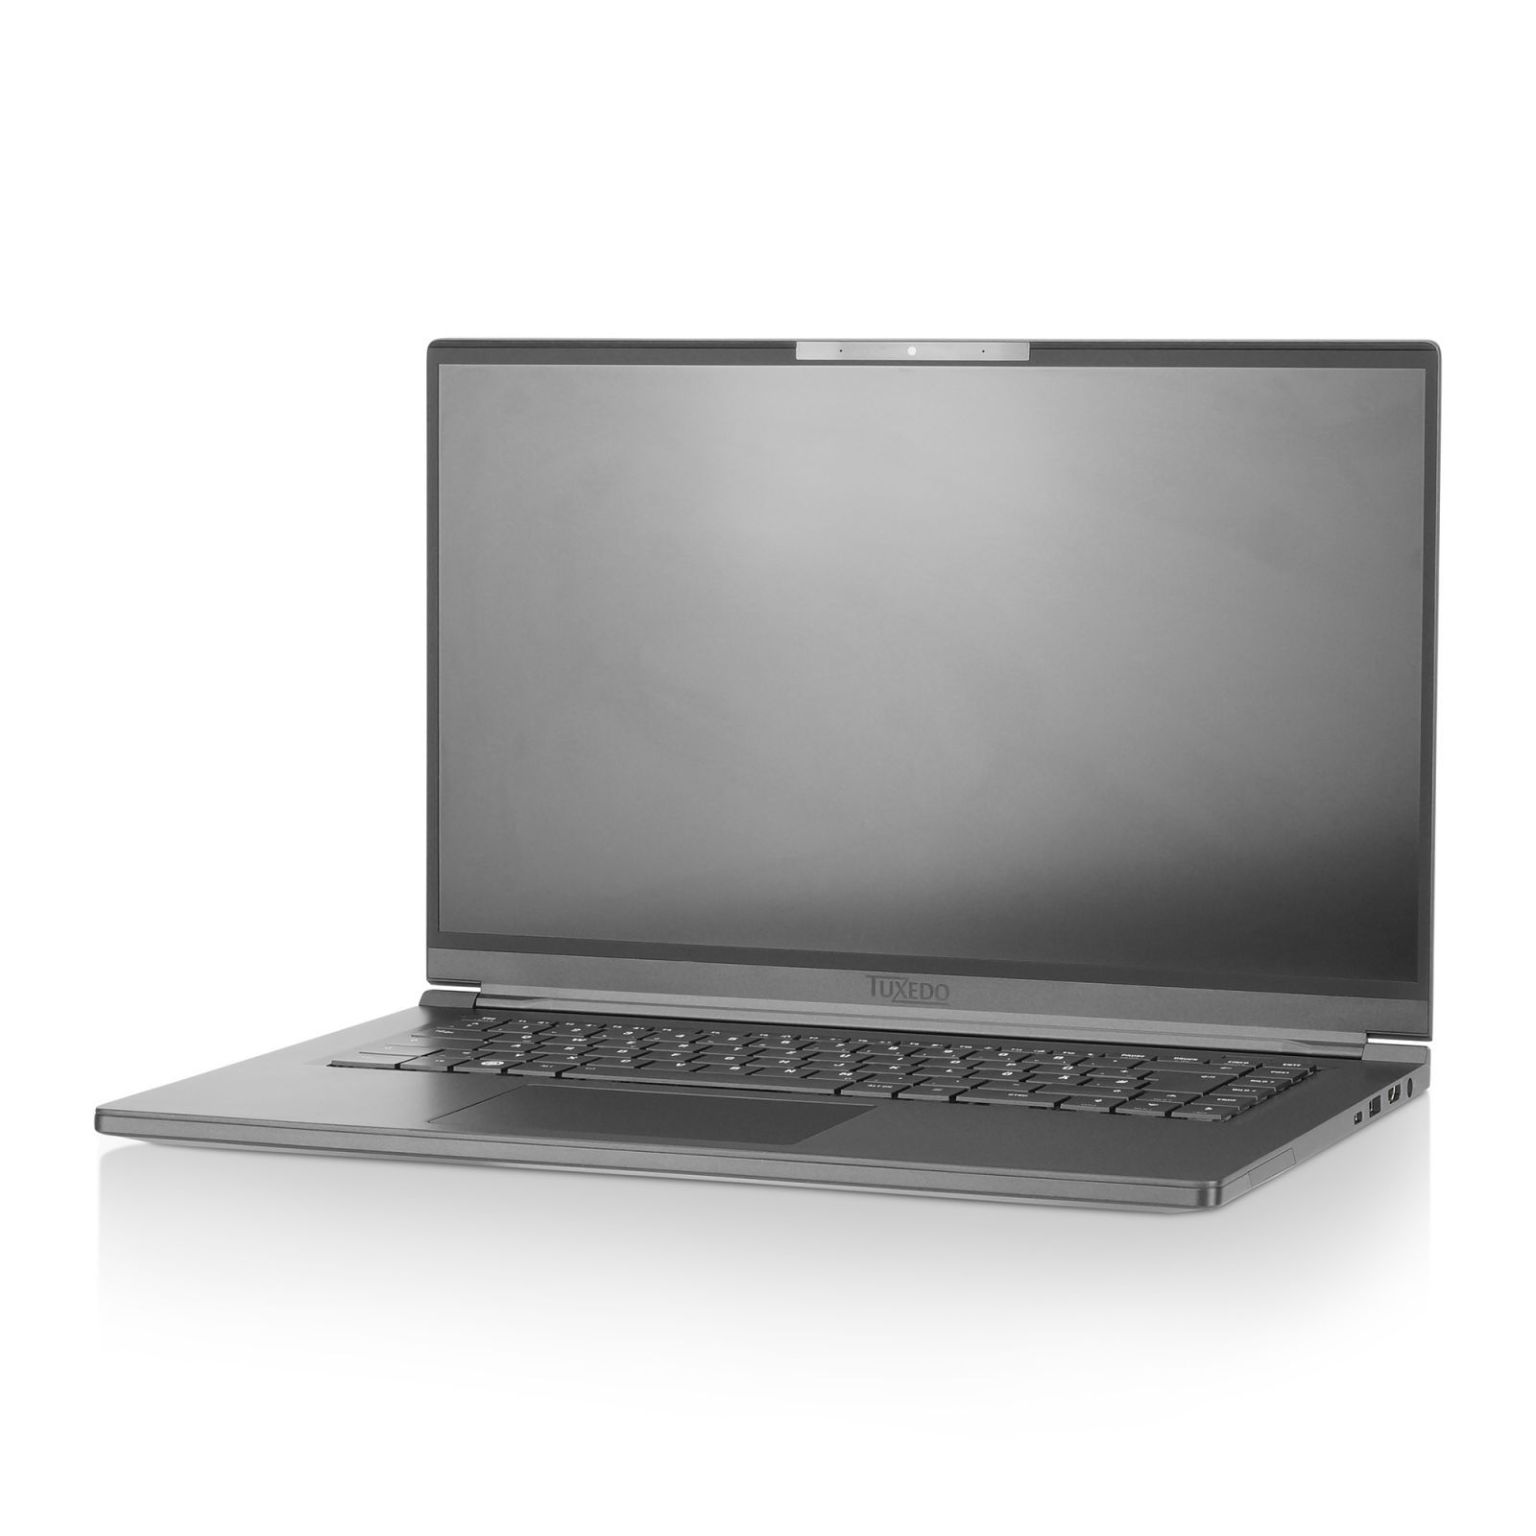 TUXEDO lança primeiro laptop Linux com AMD